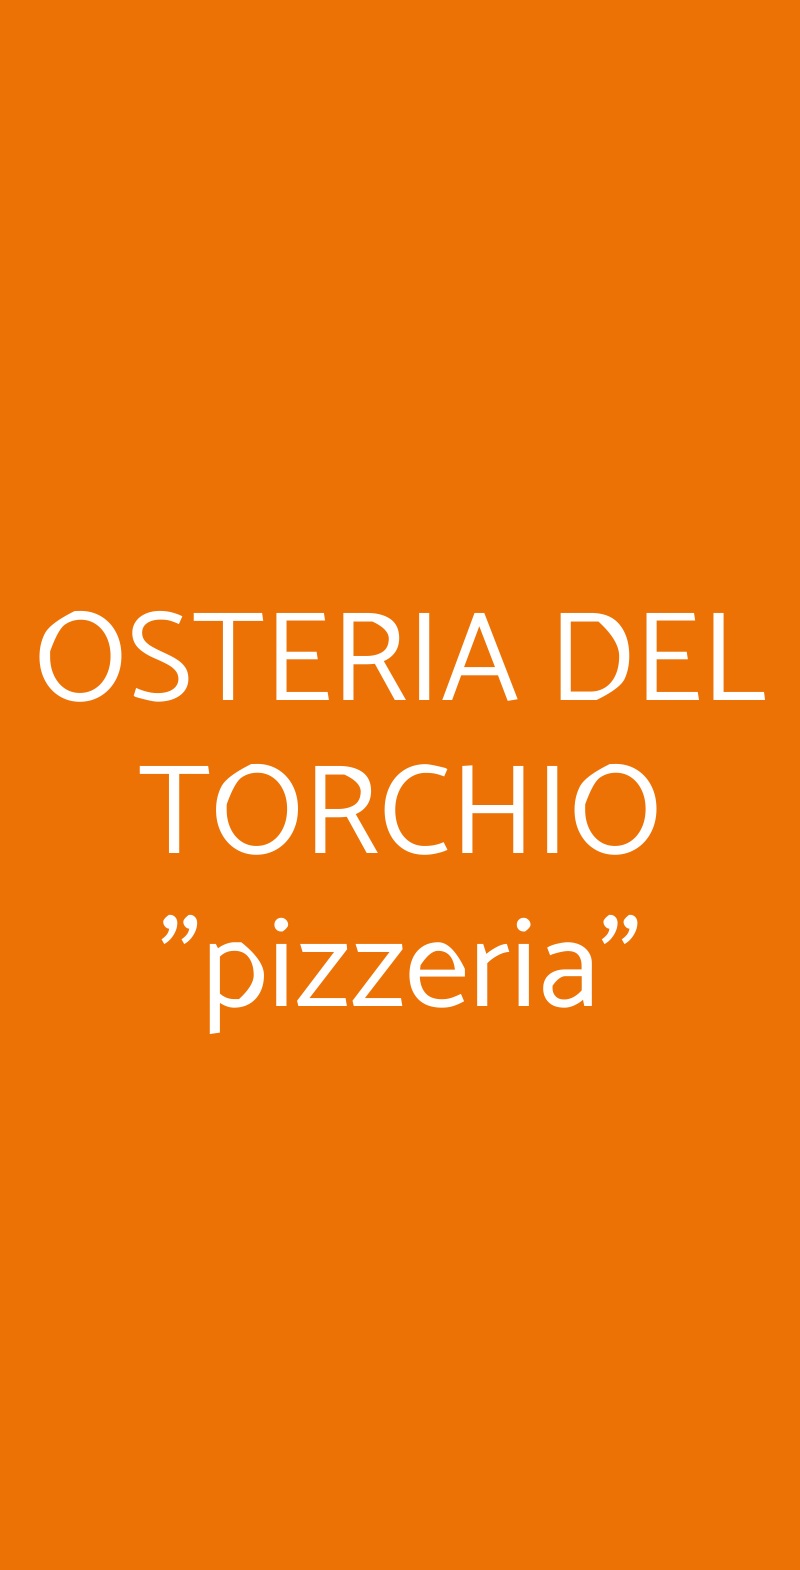 OSTERIA DEL TORCHIO "pizzeria" Montesarchio menù 1 pagina